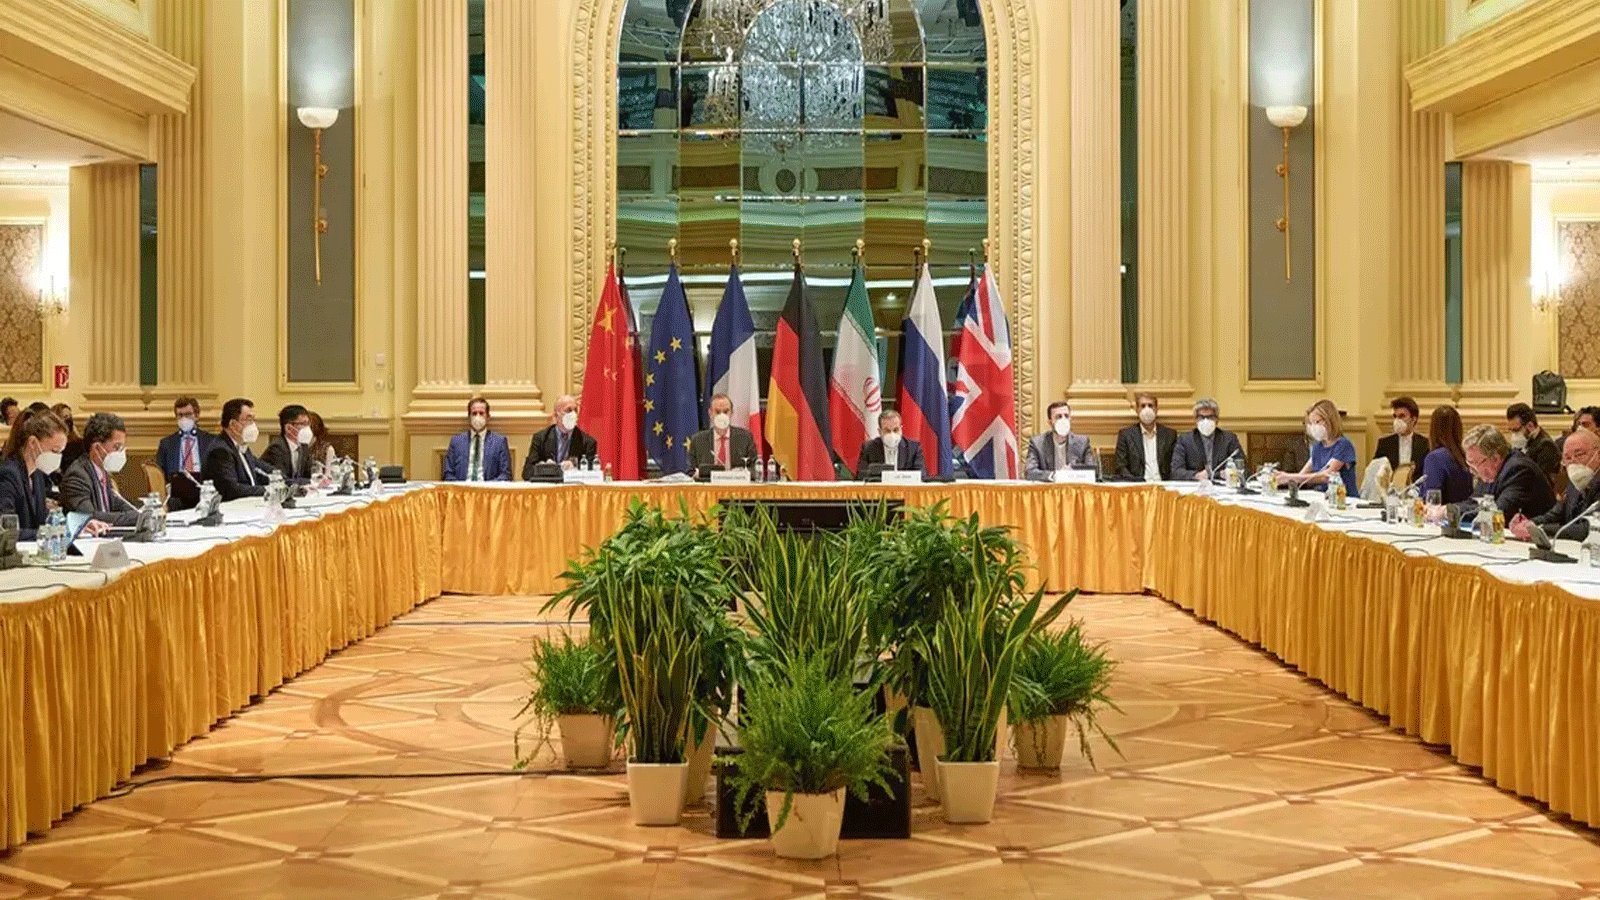 صورة التقطتها ونشرتها بعثة الاتحاد الأوروبي في فيينا تُظهر أعضاء وفد من أطراف الاتفاق النووي الإيراني